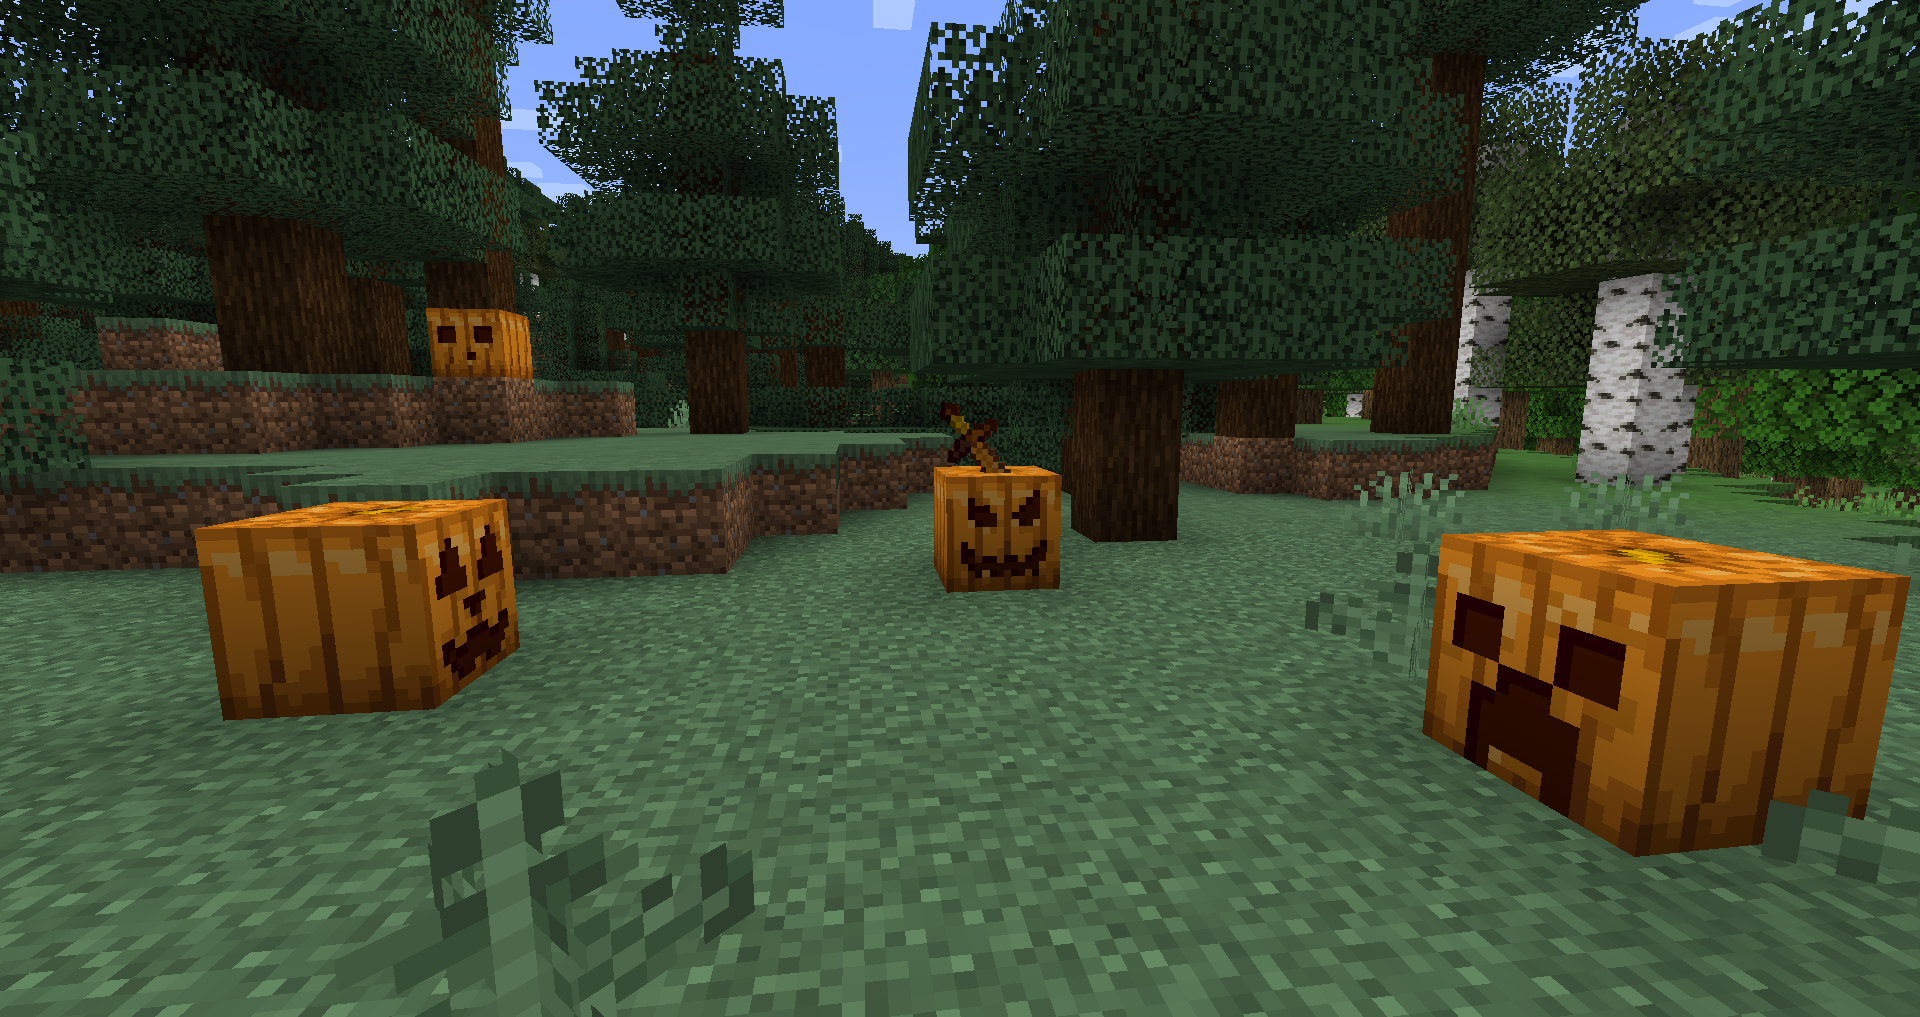 A patch of pumpkins